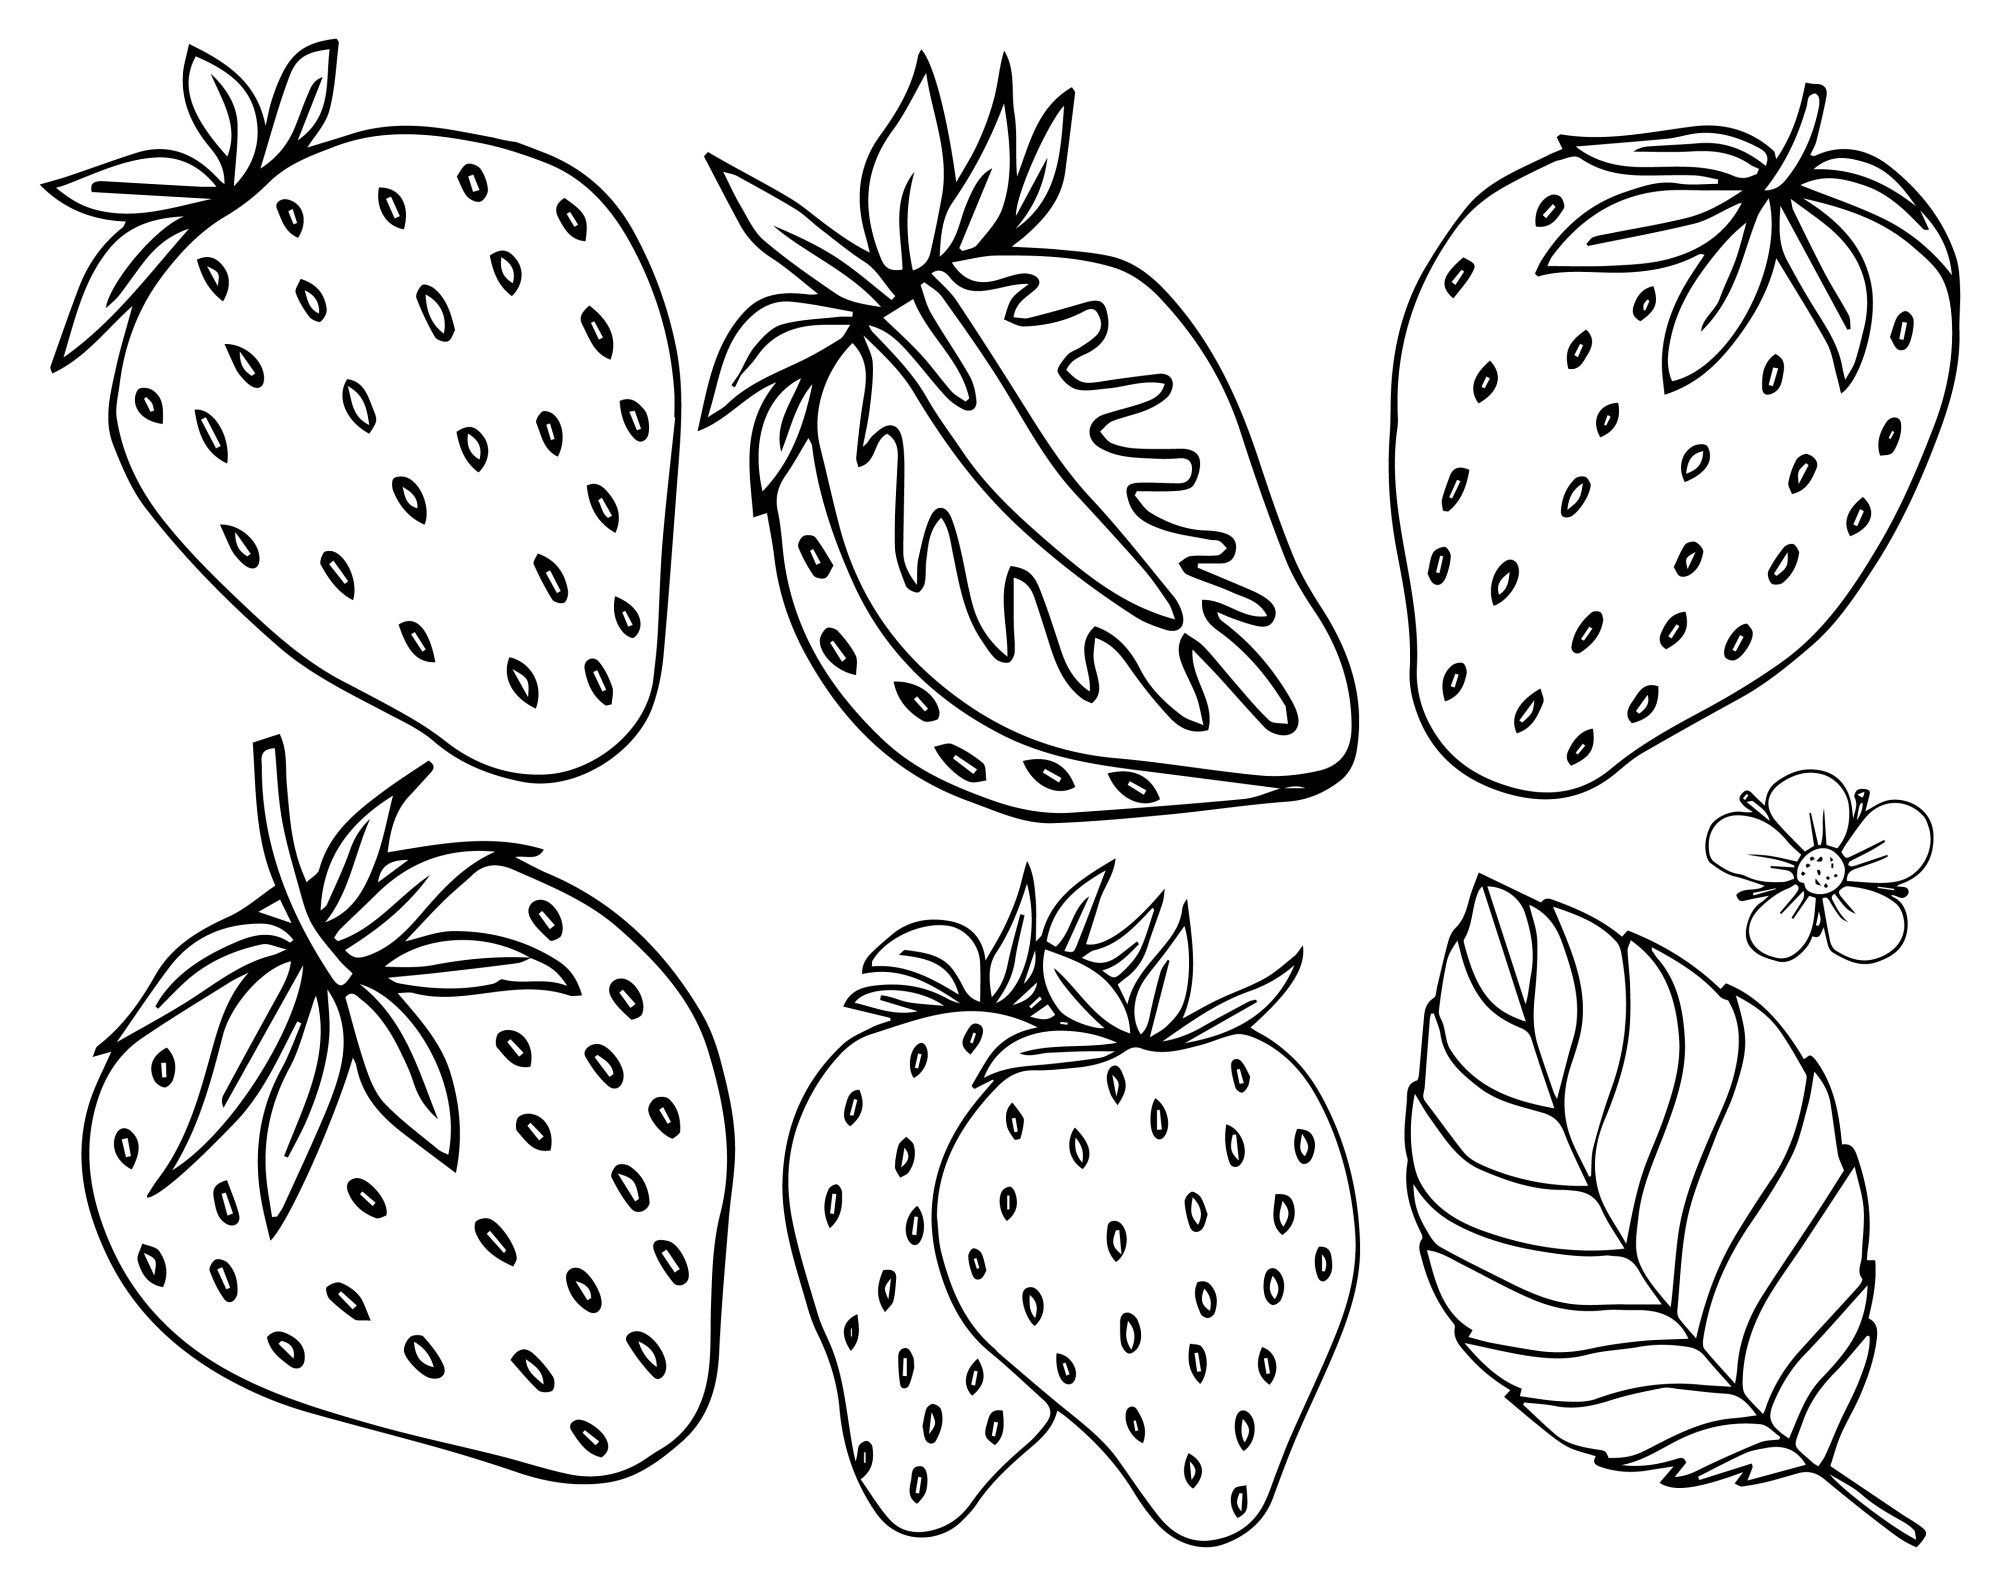 Раскраска для детей: набор ягод клубники с половинкой и листиком